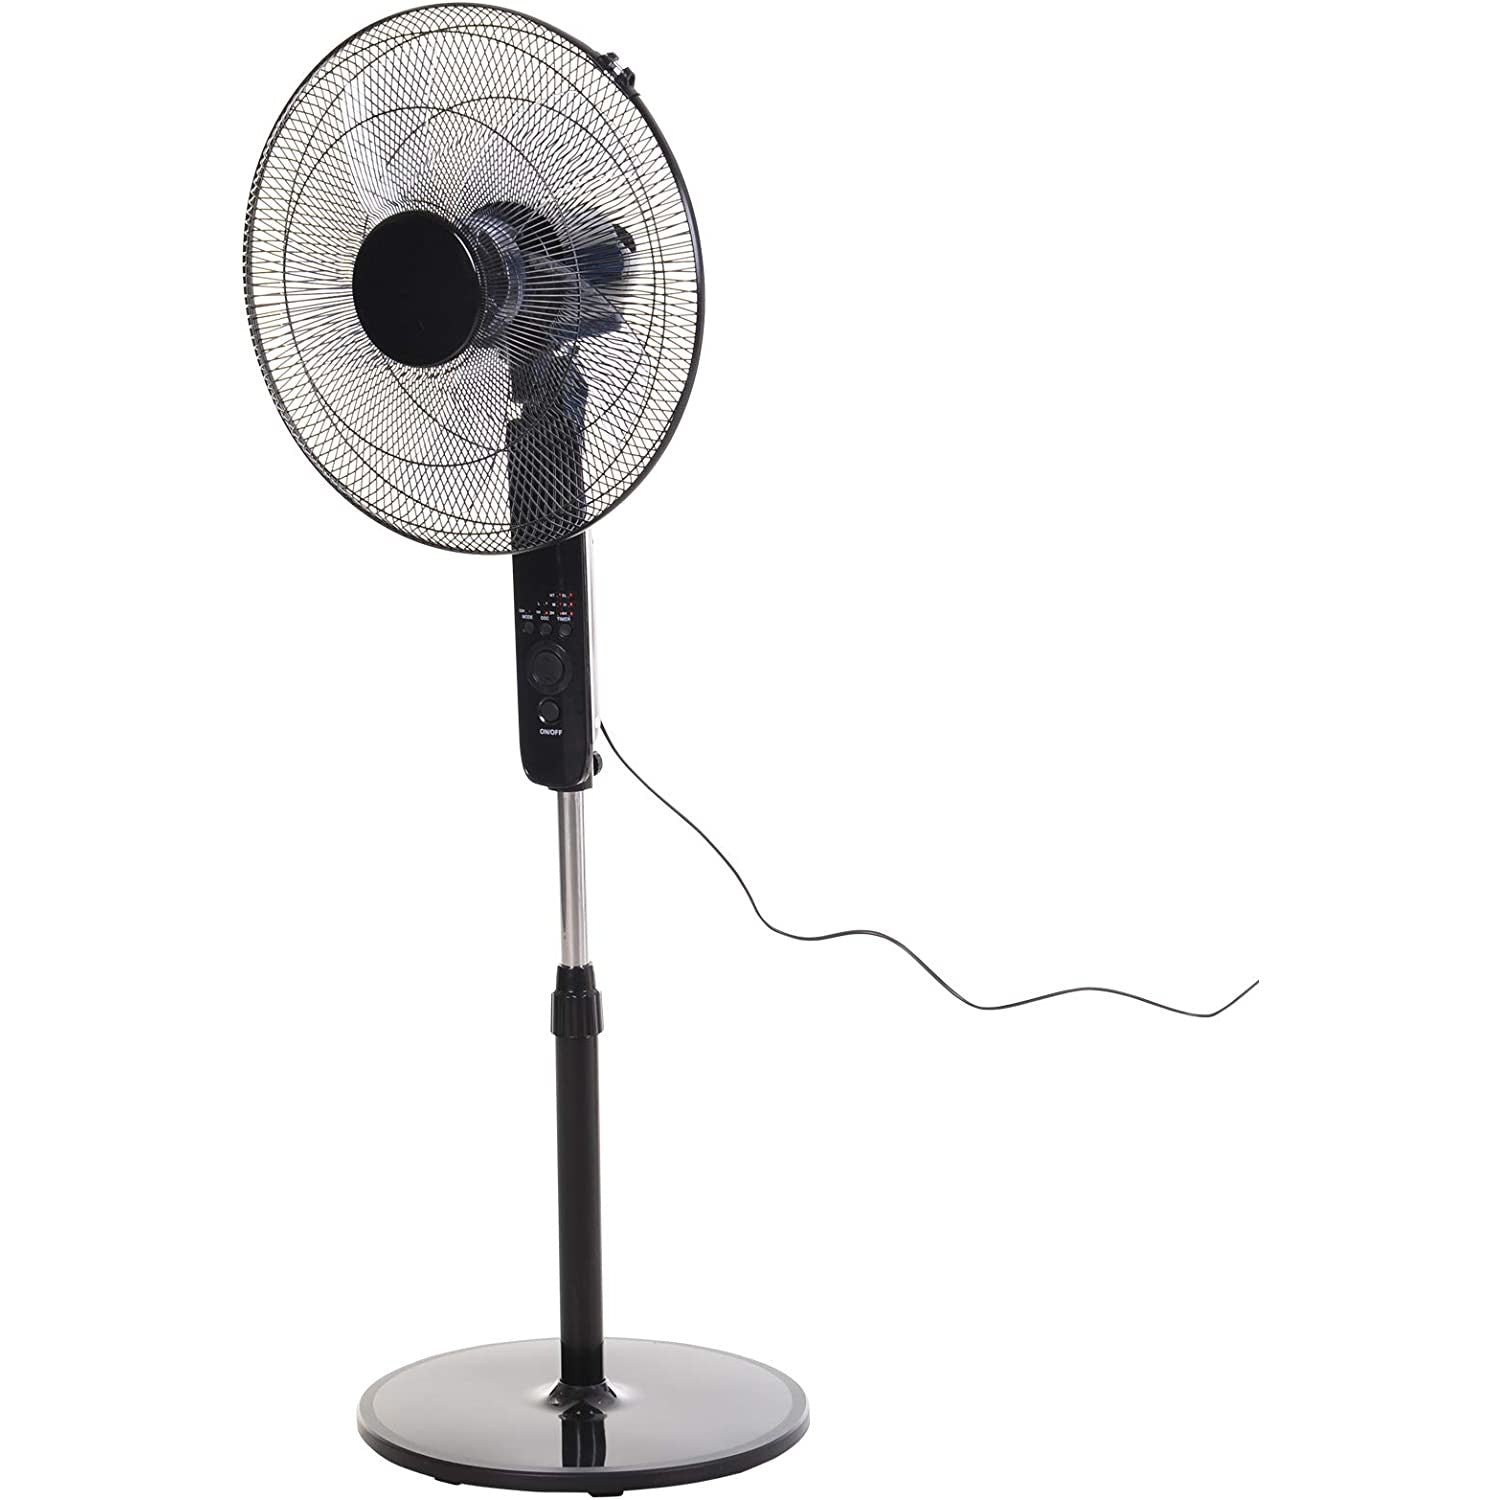 HOMCOM Adjustable Height Oscillating Floor Fan - Black